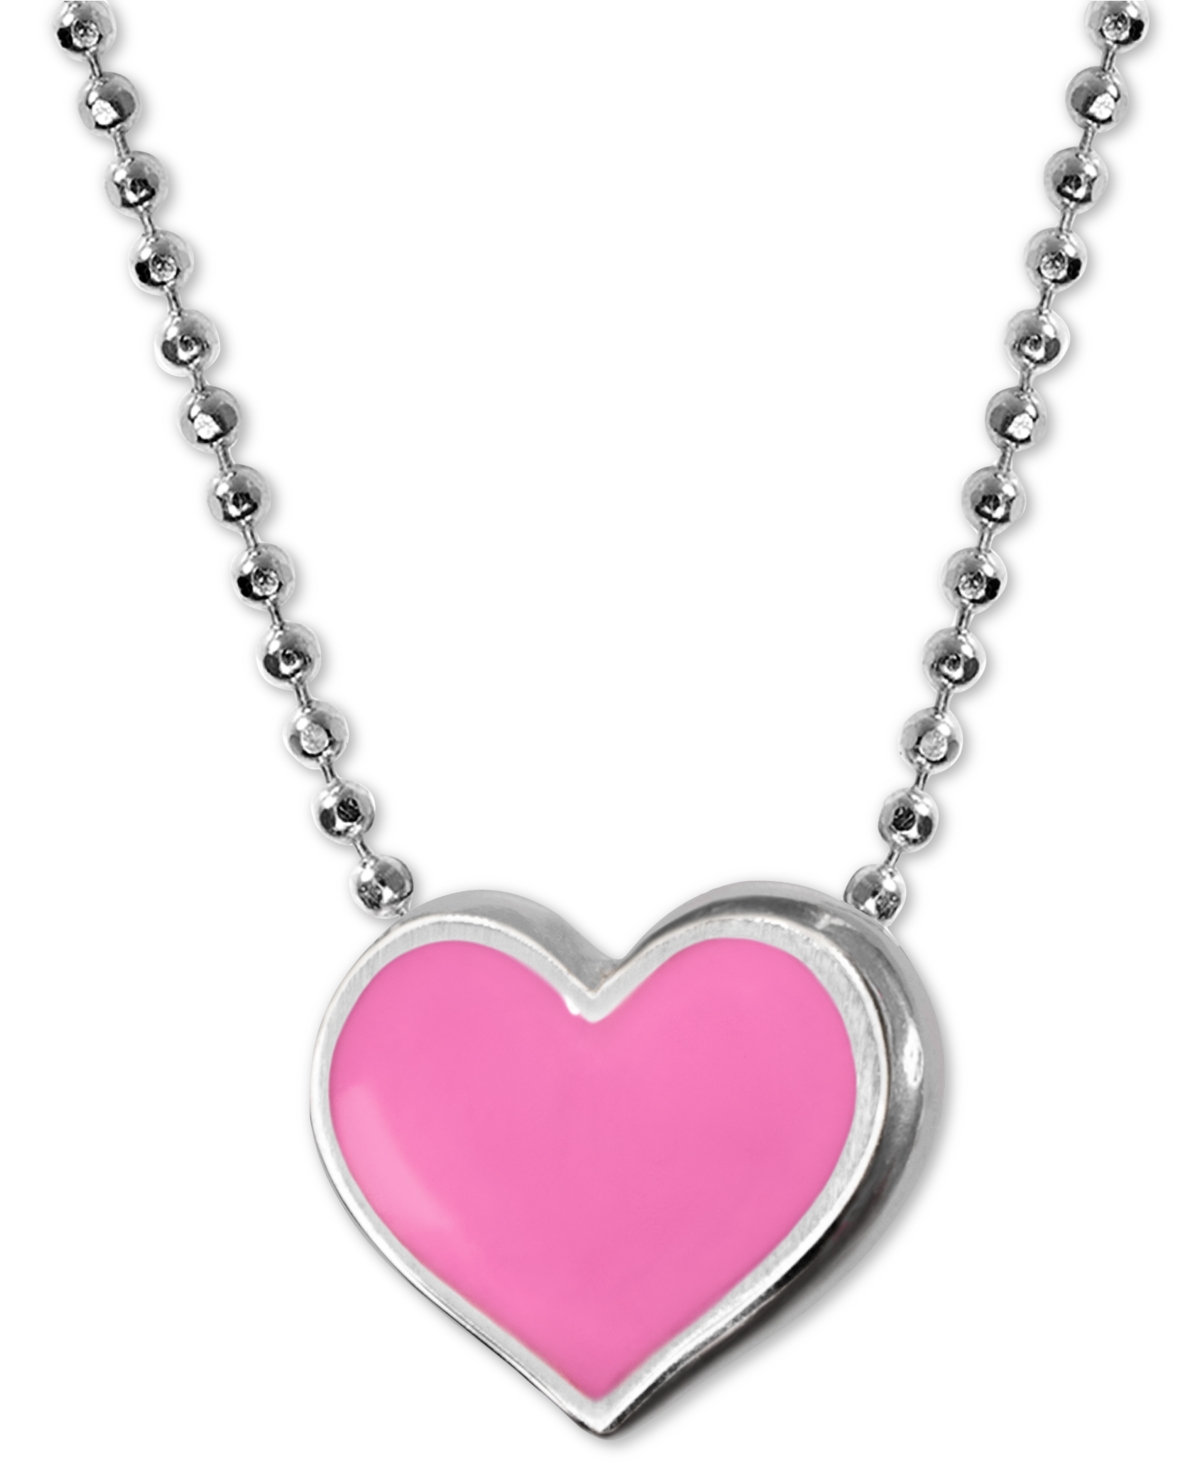 Enamel Heart 16" Pendant Necklace in Sterling Silver - Pink